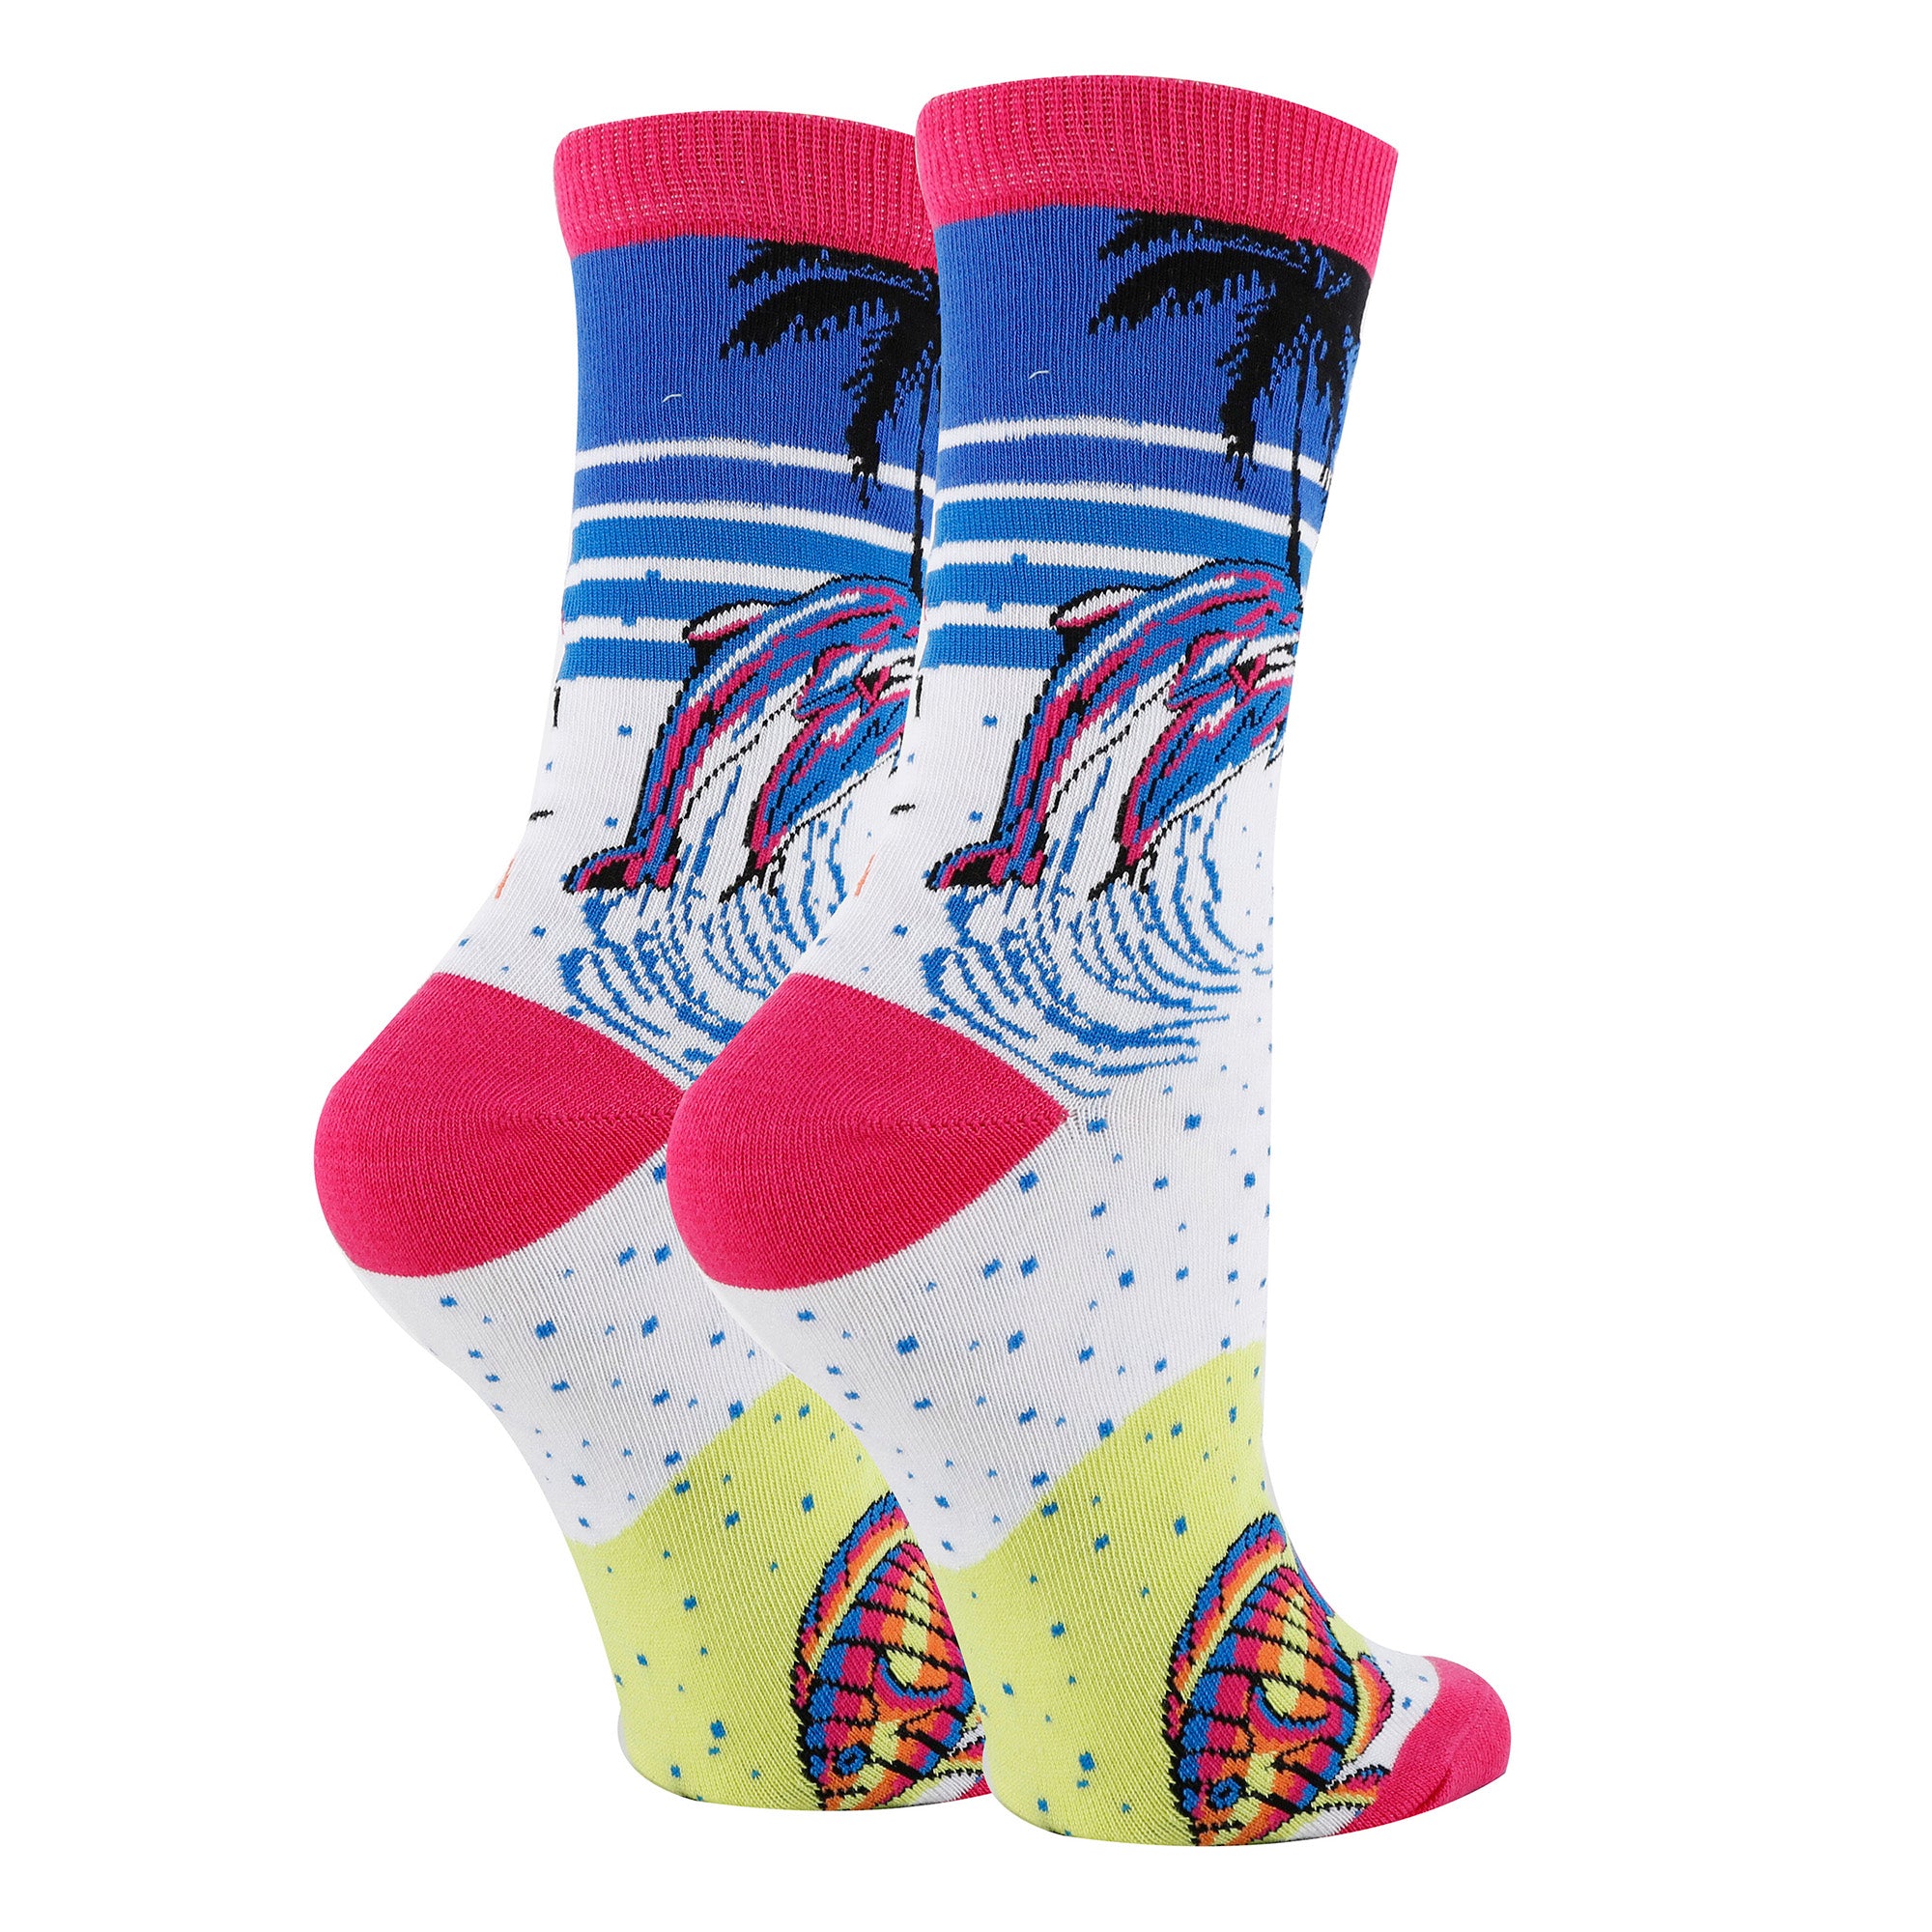 Myrtle Beach Socks - 0